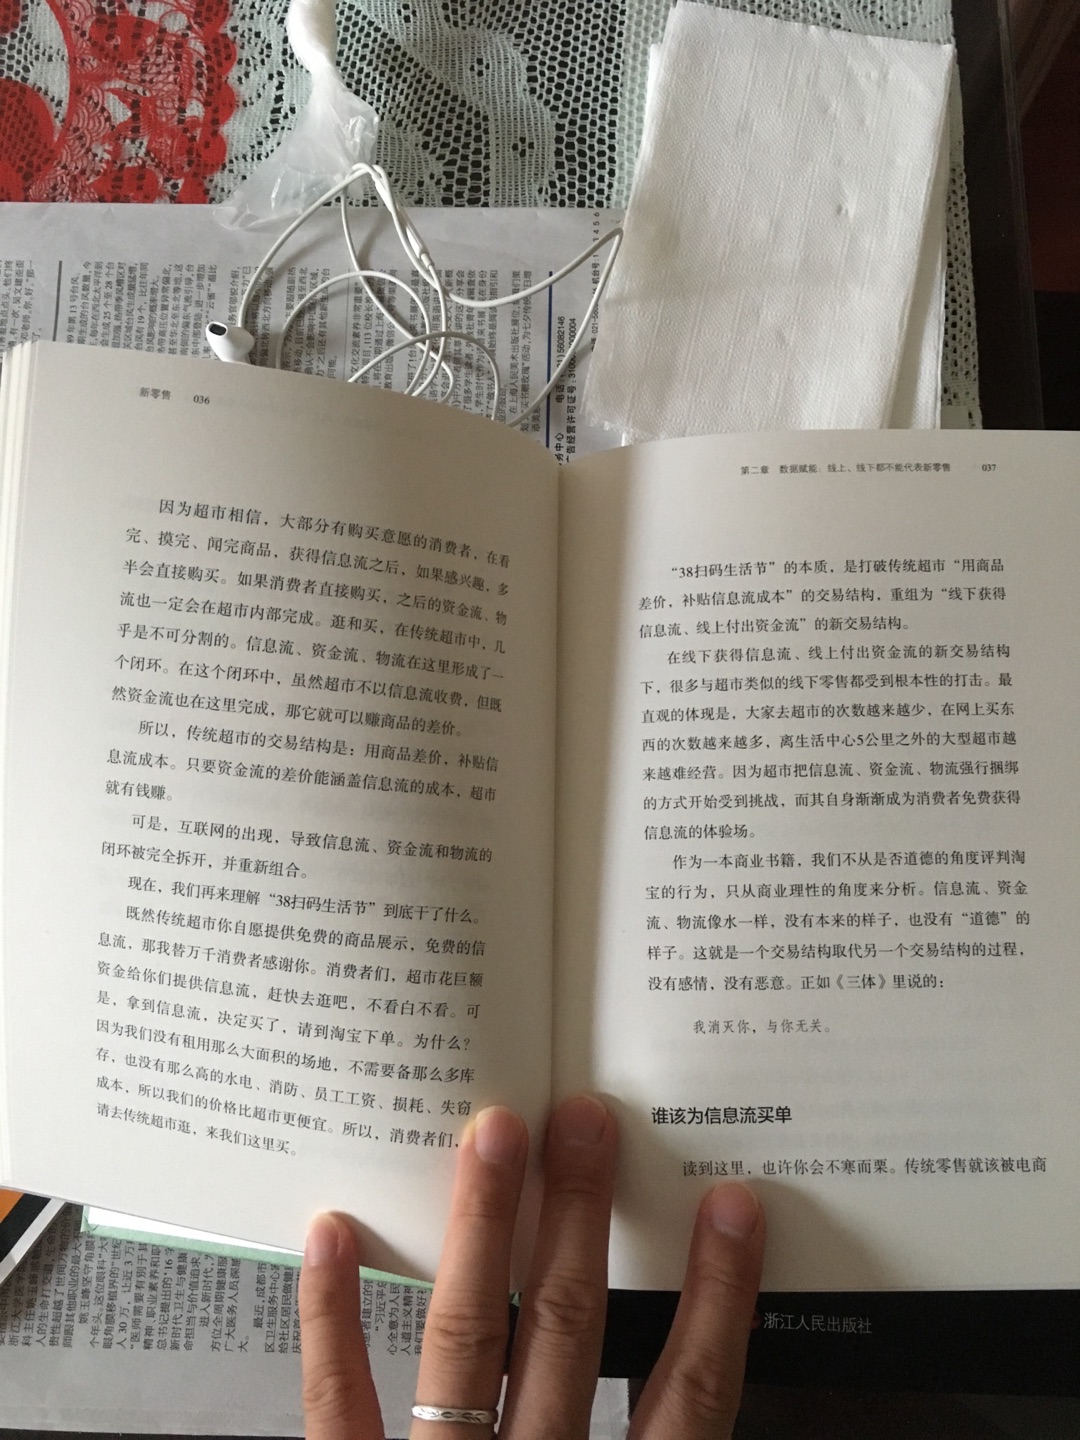 刘润老师的书出一本买一本  可惜稍晚一点  没有买到签名本  以后见面让老师签